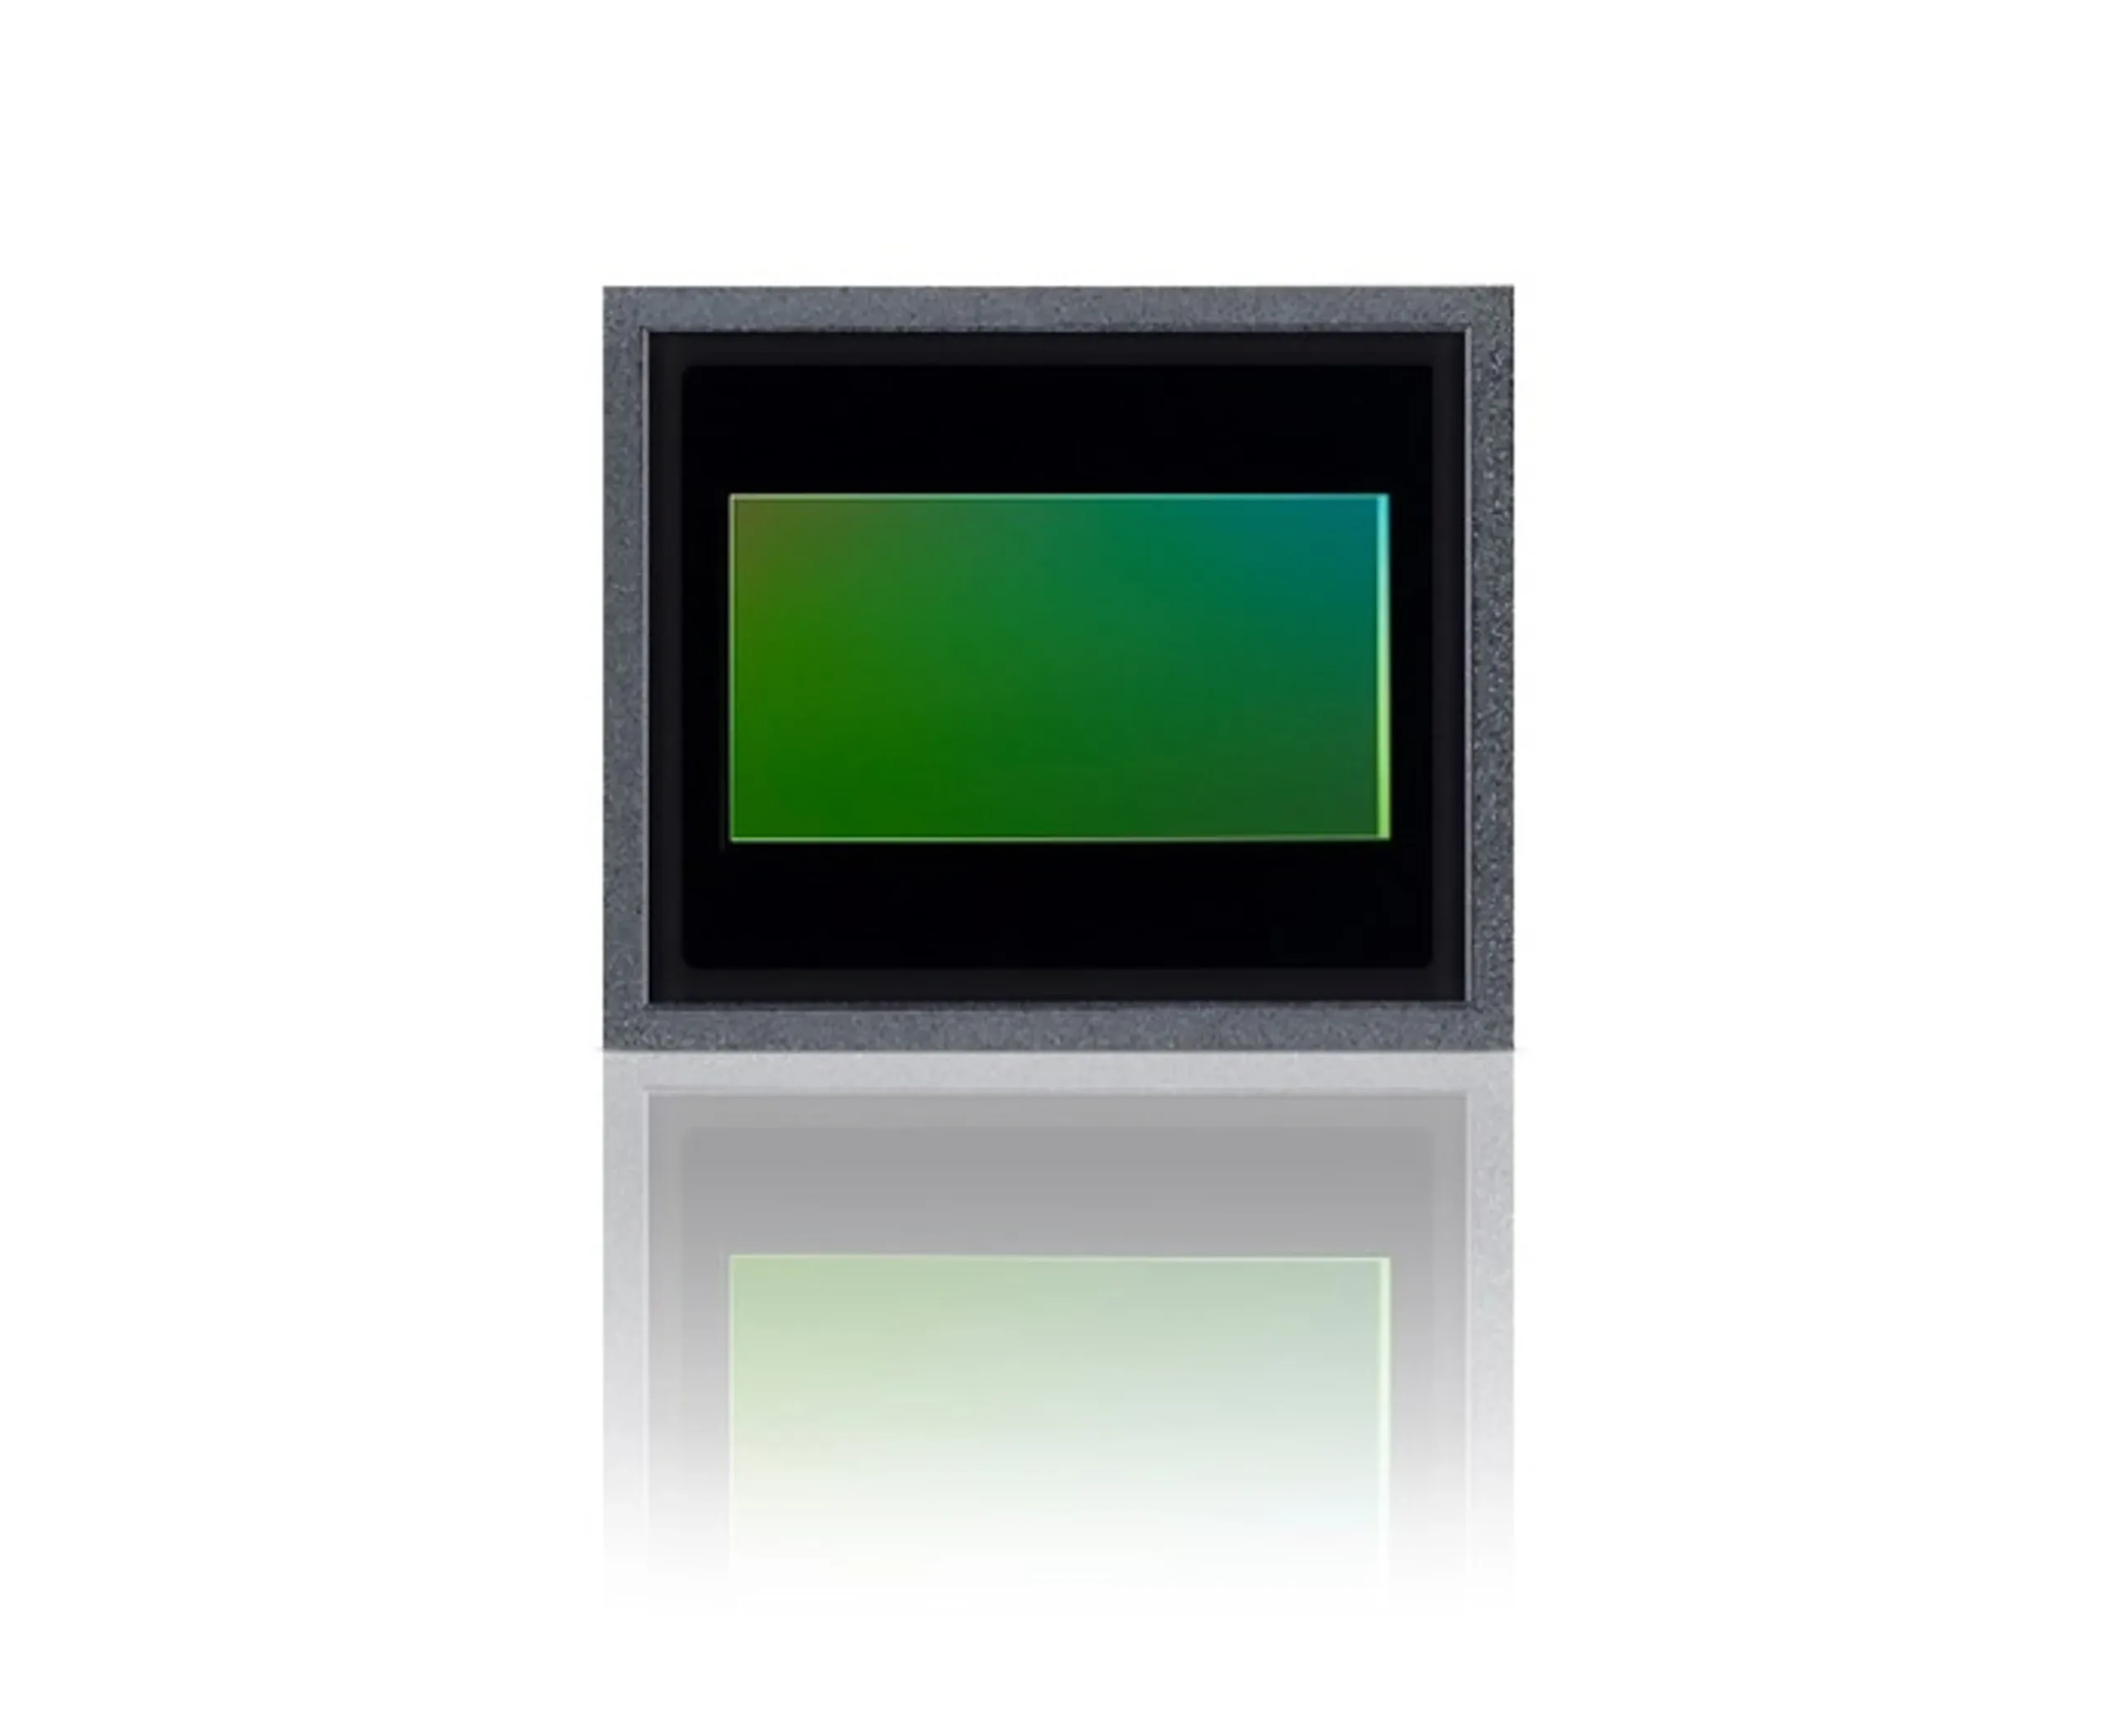 Sony Semiconductor Solutions wprowadza przetwornik obrazu CMOS przeznaczony do kamer samochodowych, o wiodącej na rynku rozdzielczości efektywnej 17,42 megapiksela